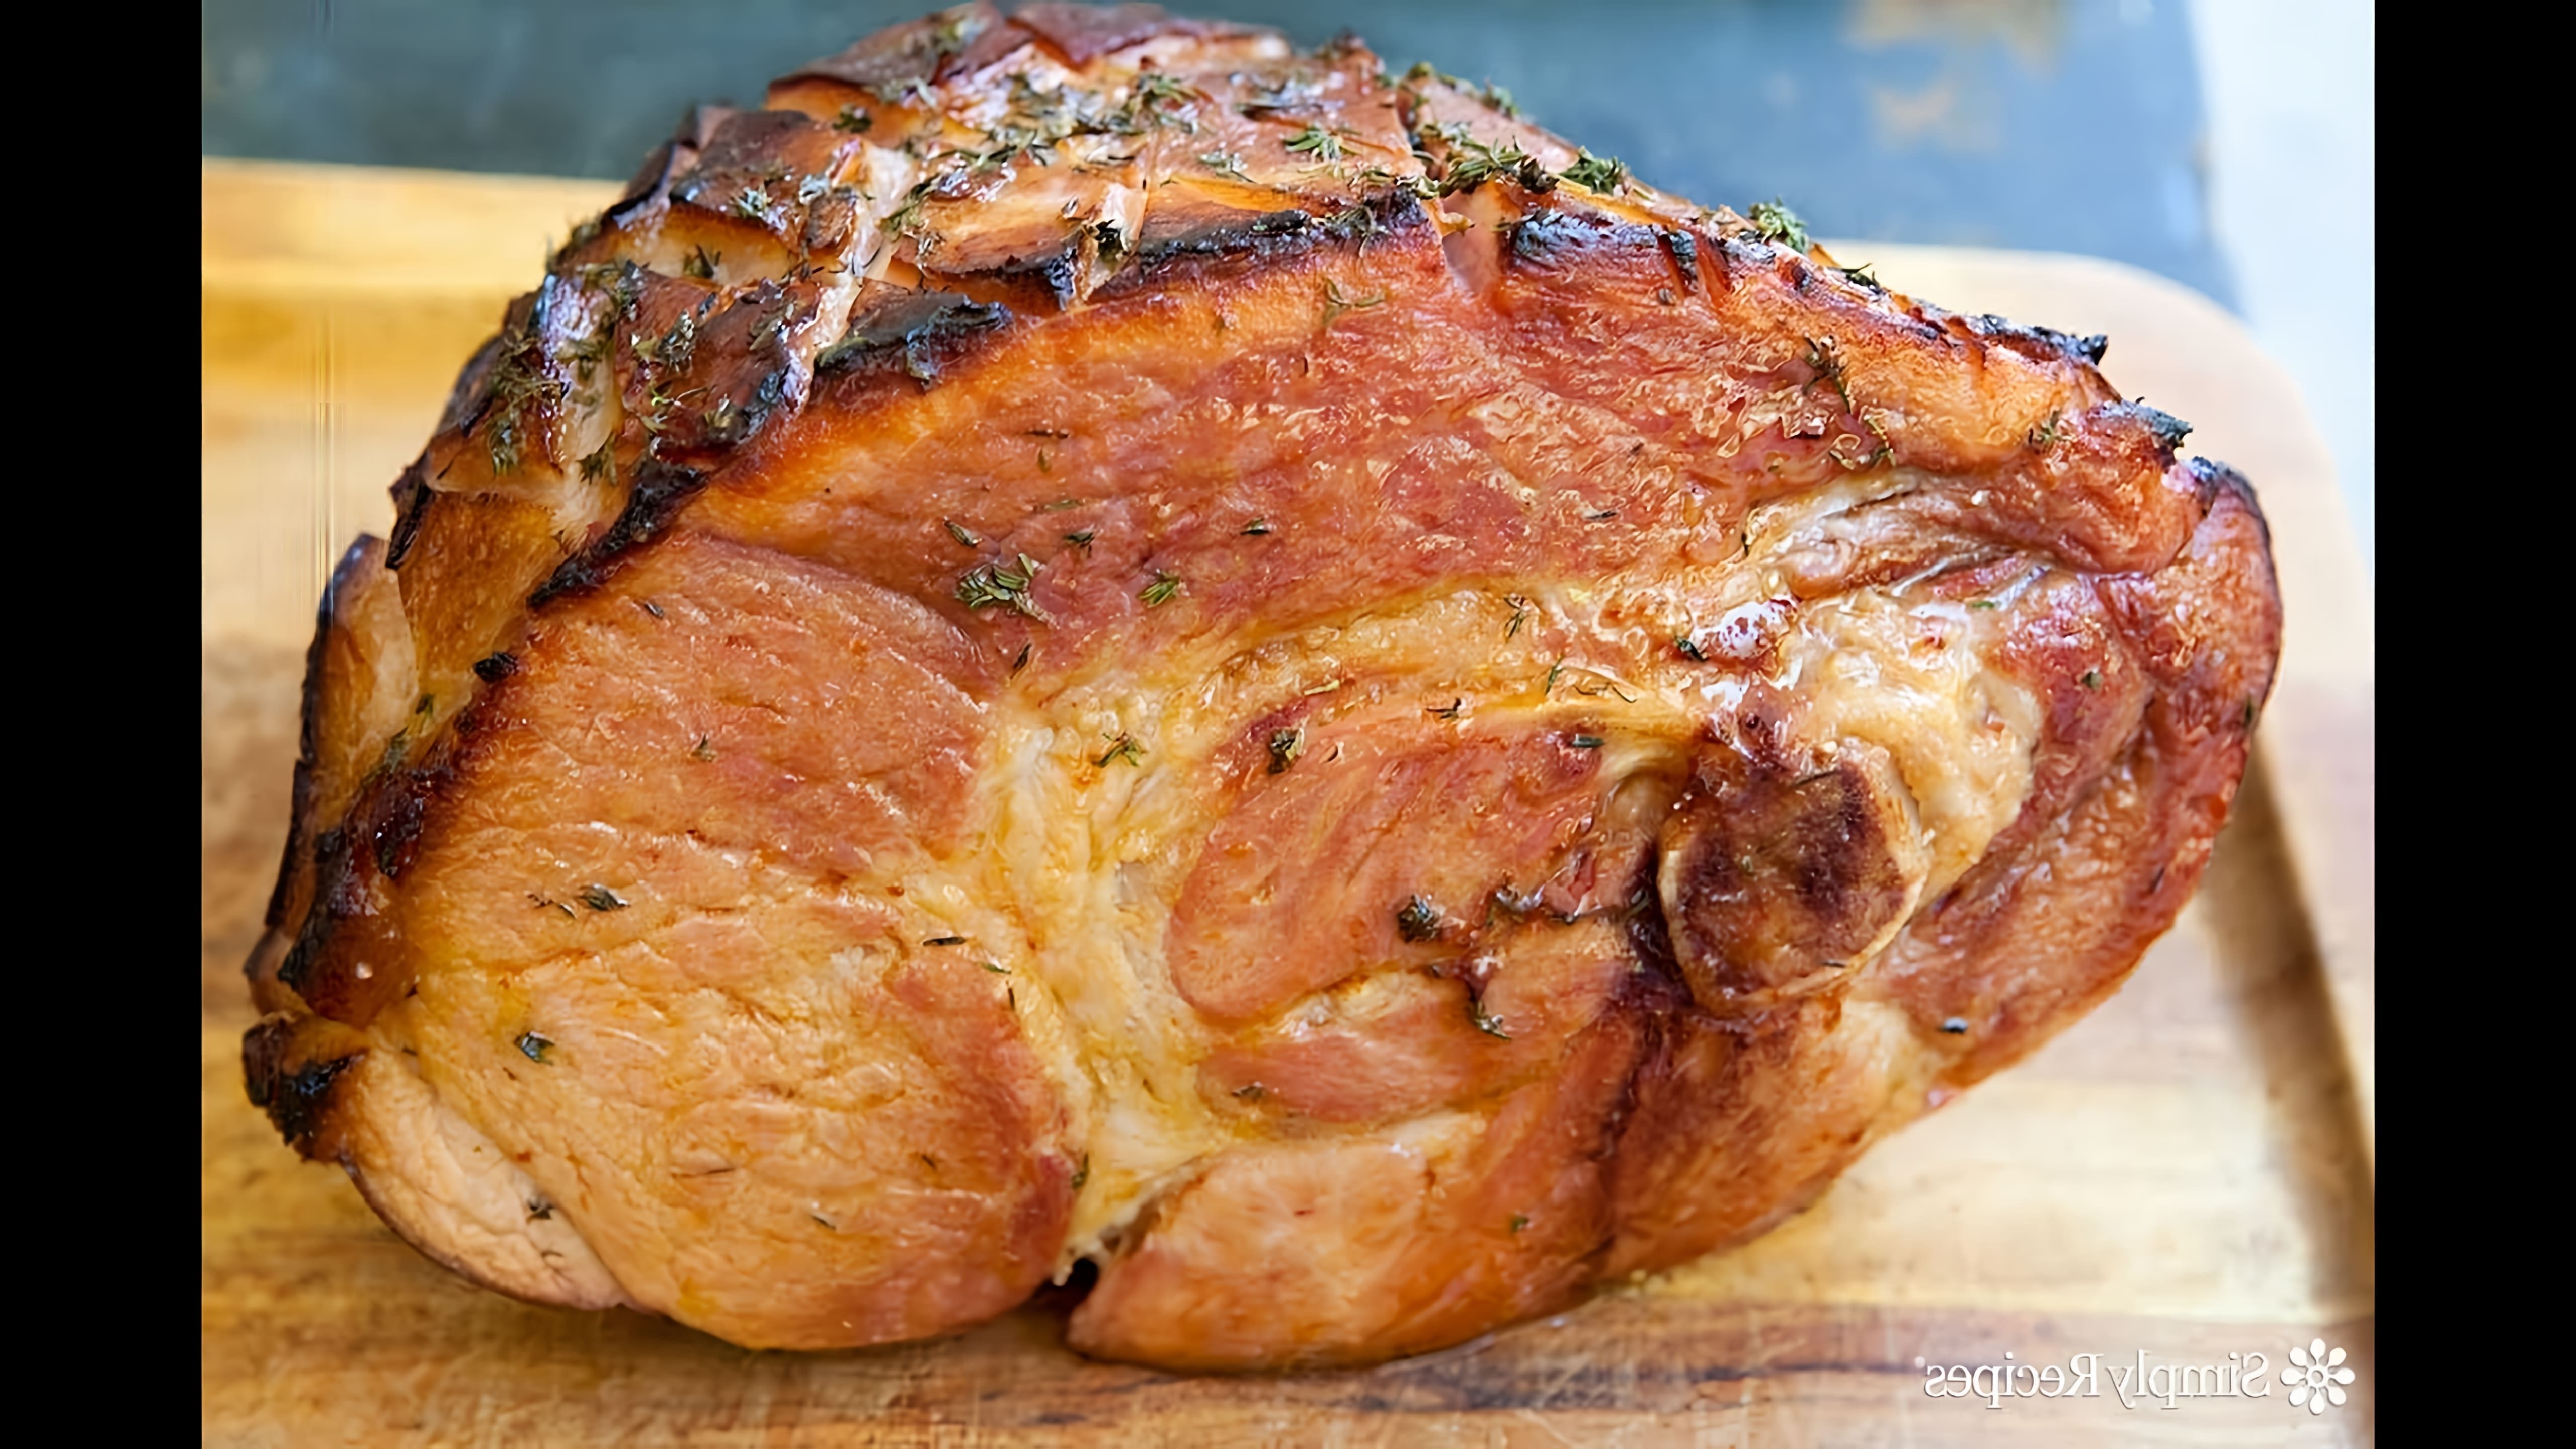 В этом видео демонстрируется процесс приготовления свиного окорока в духовке